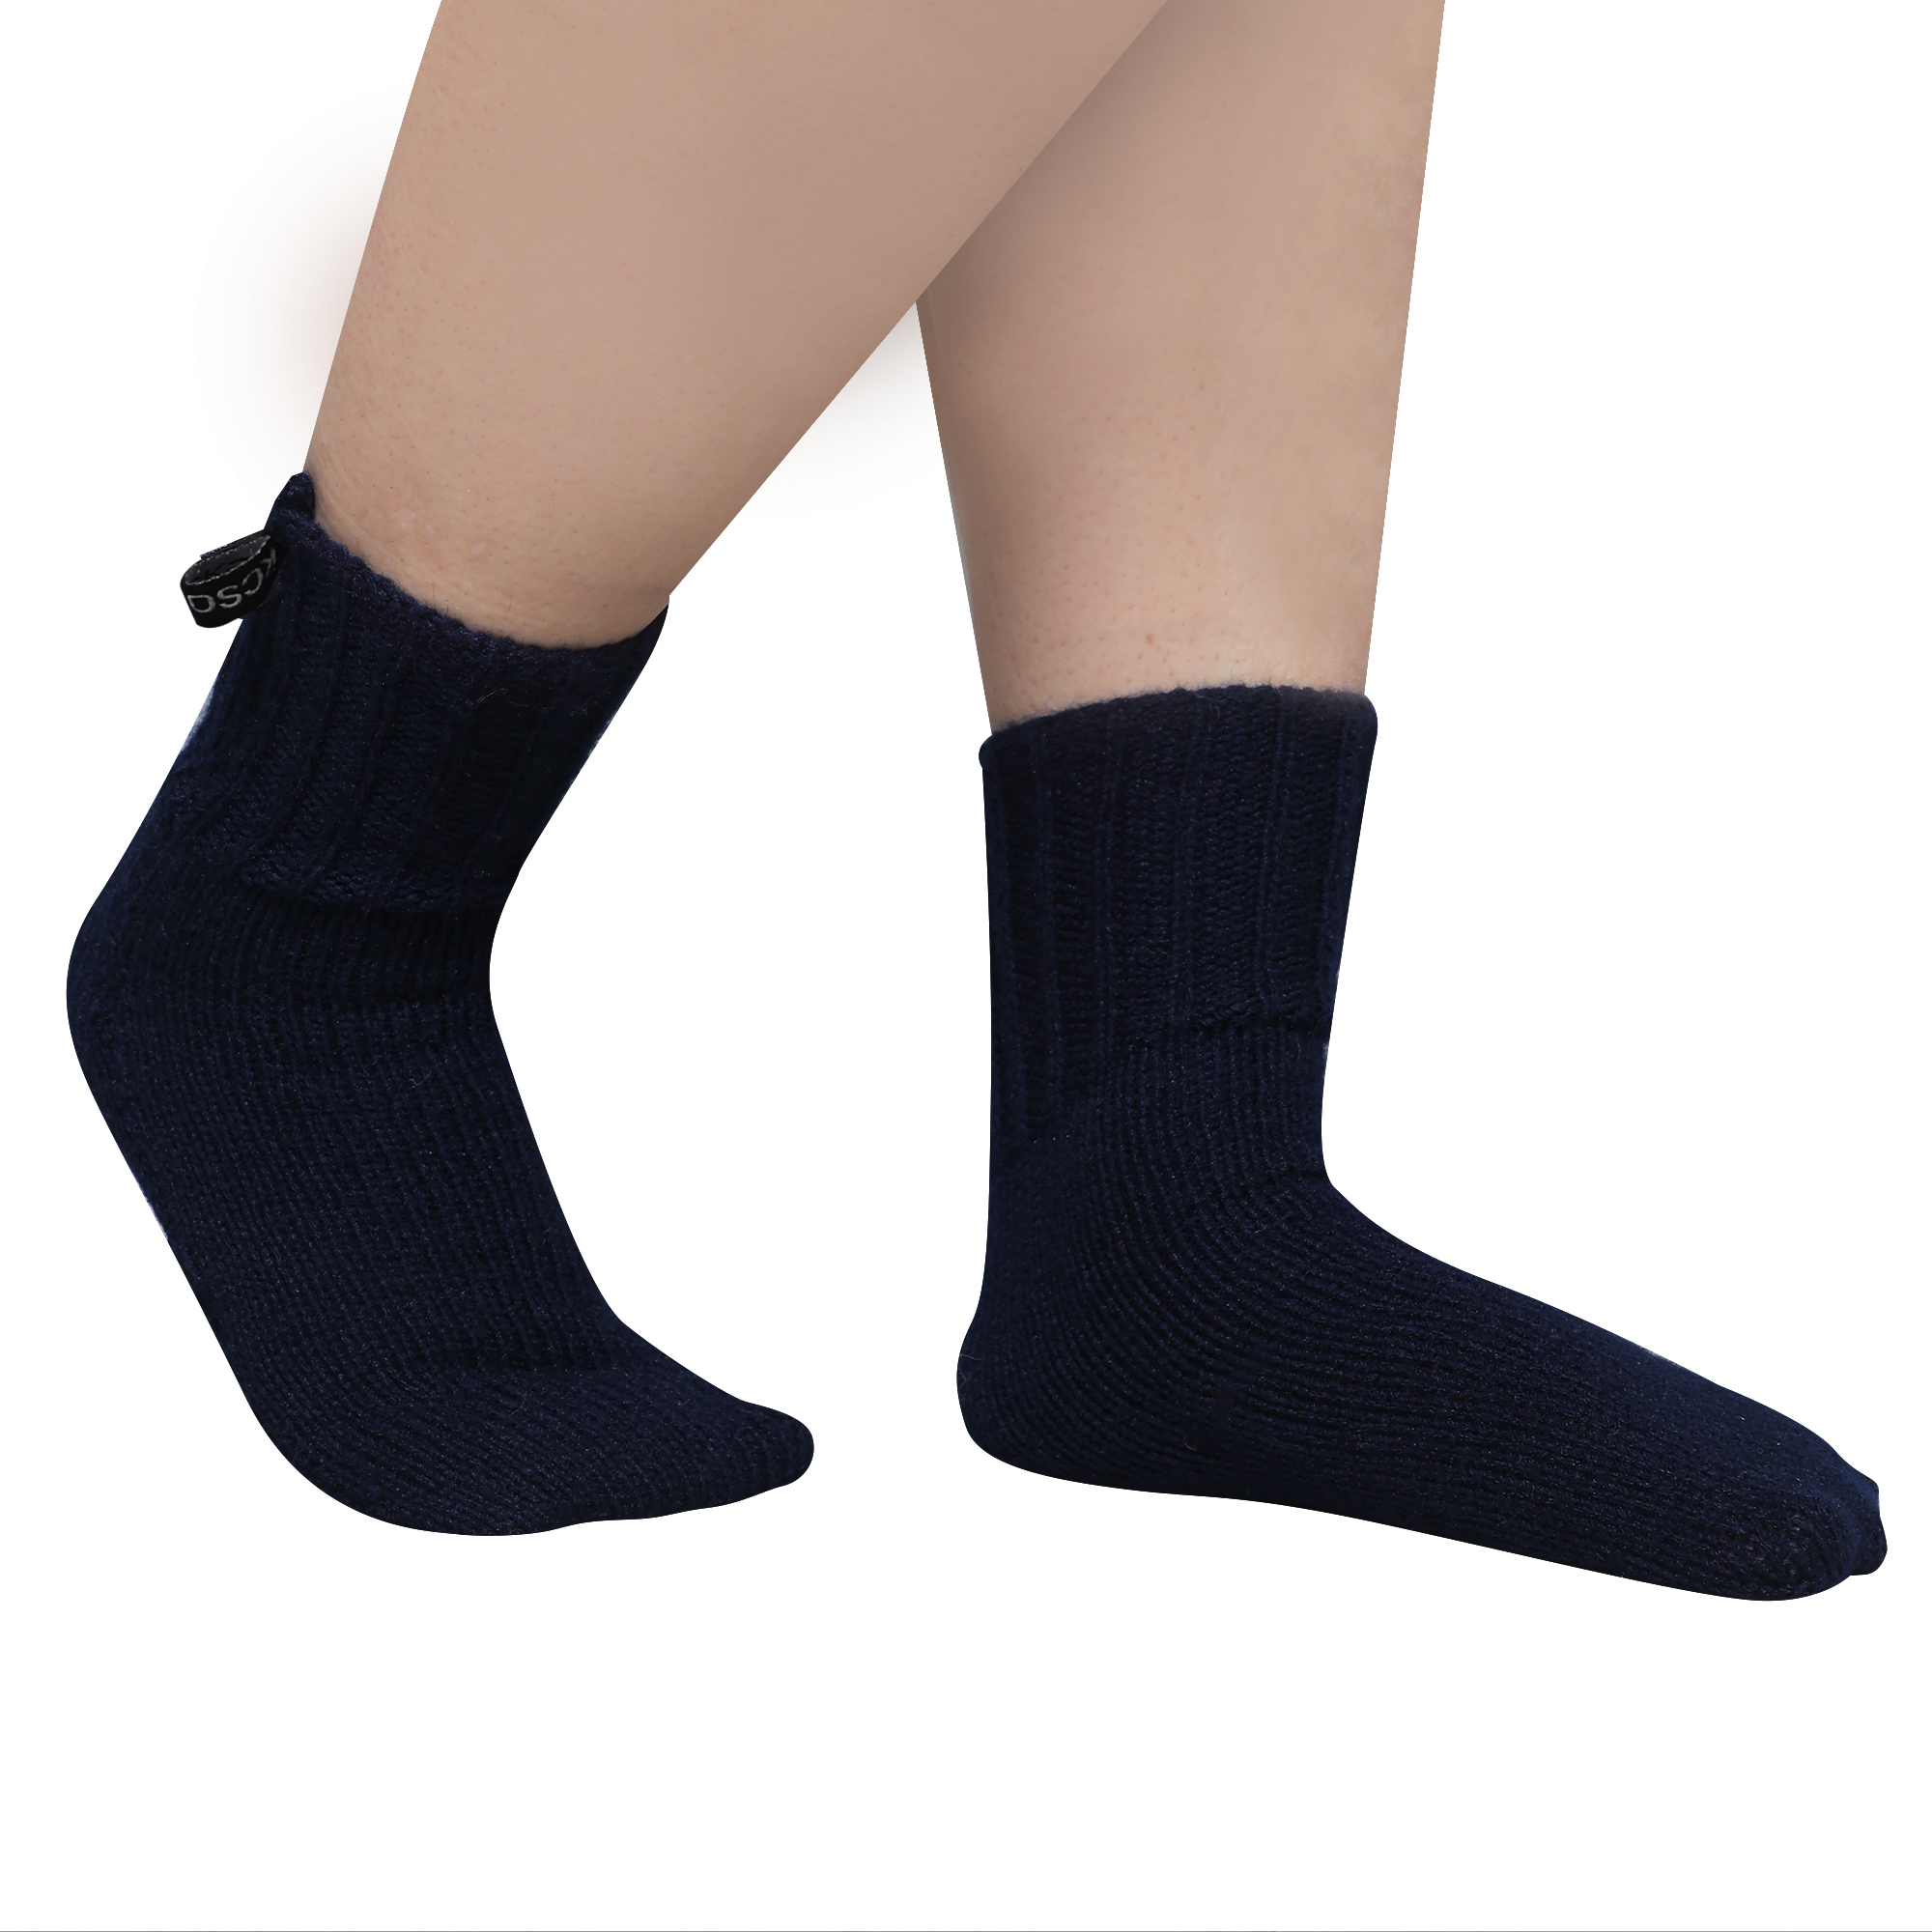 FREE SIZE KC Hand Knitted Universal Socks (UNISEX) spl. for girls